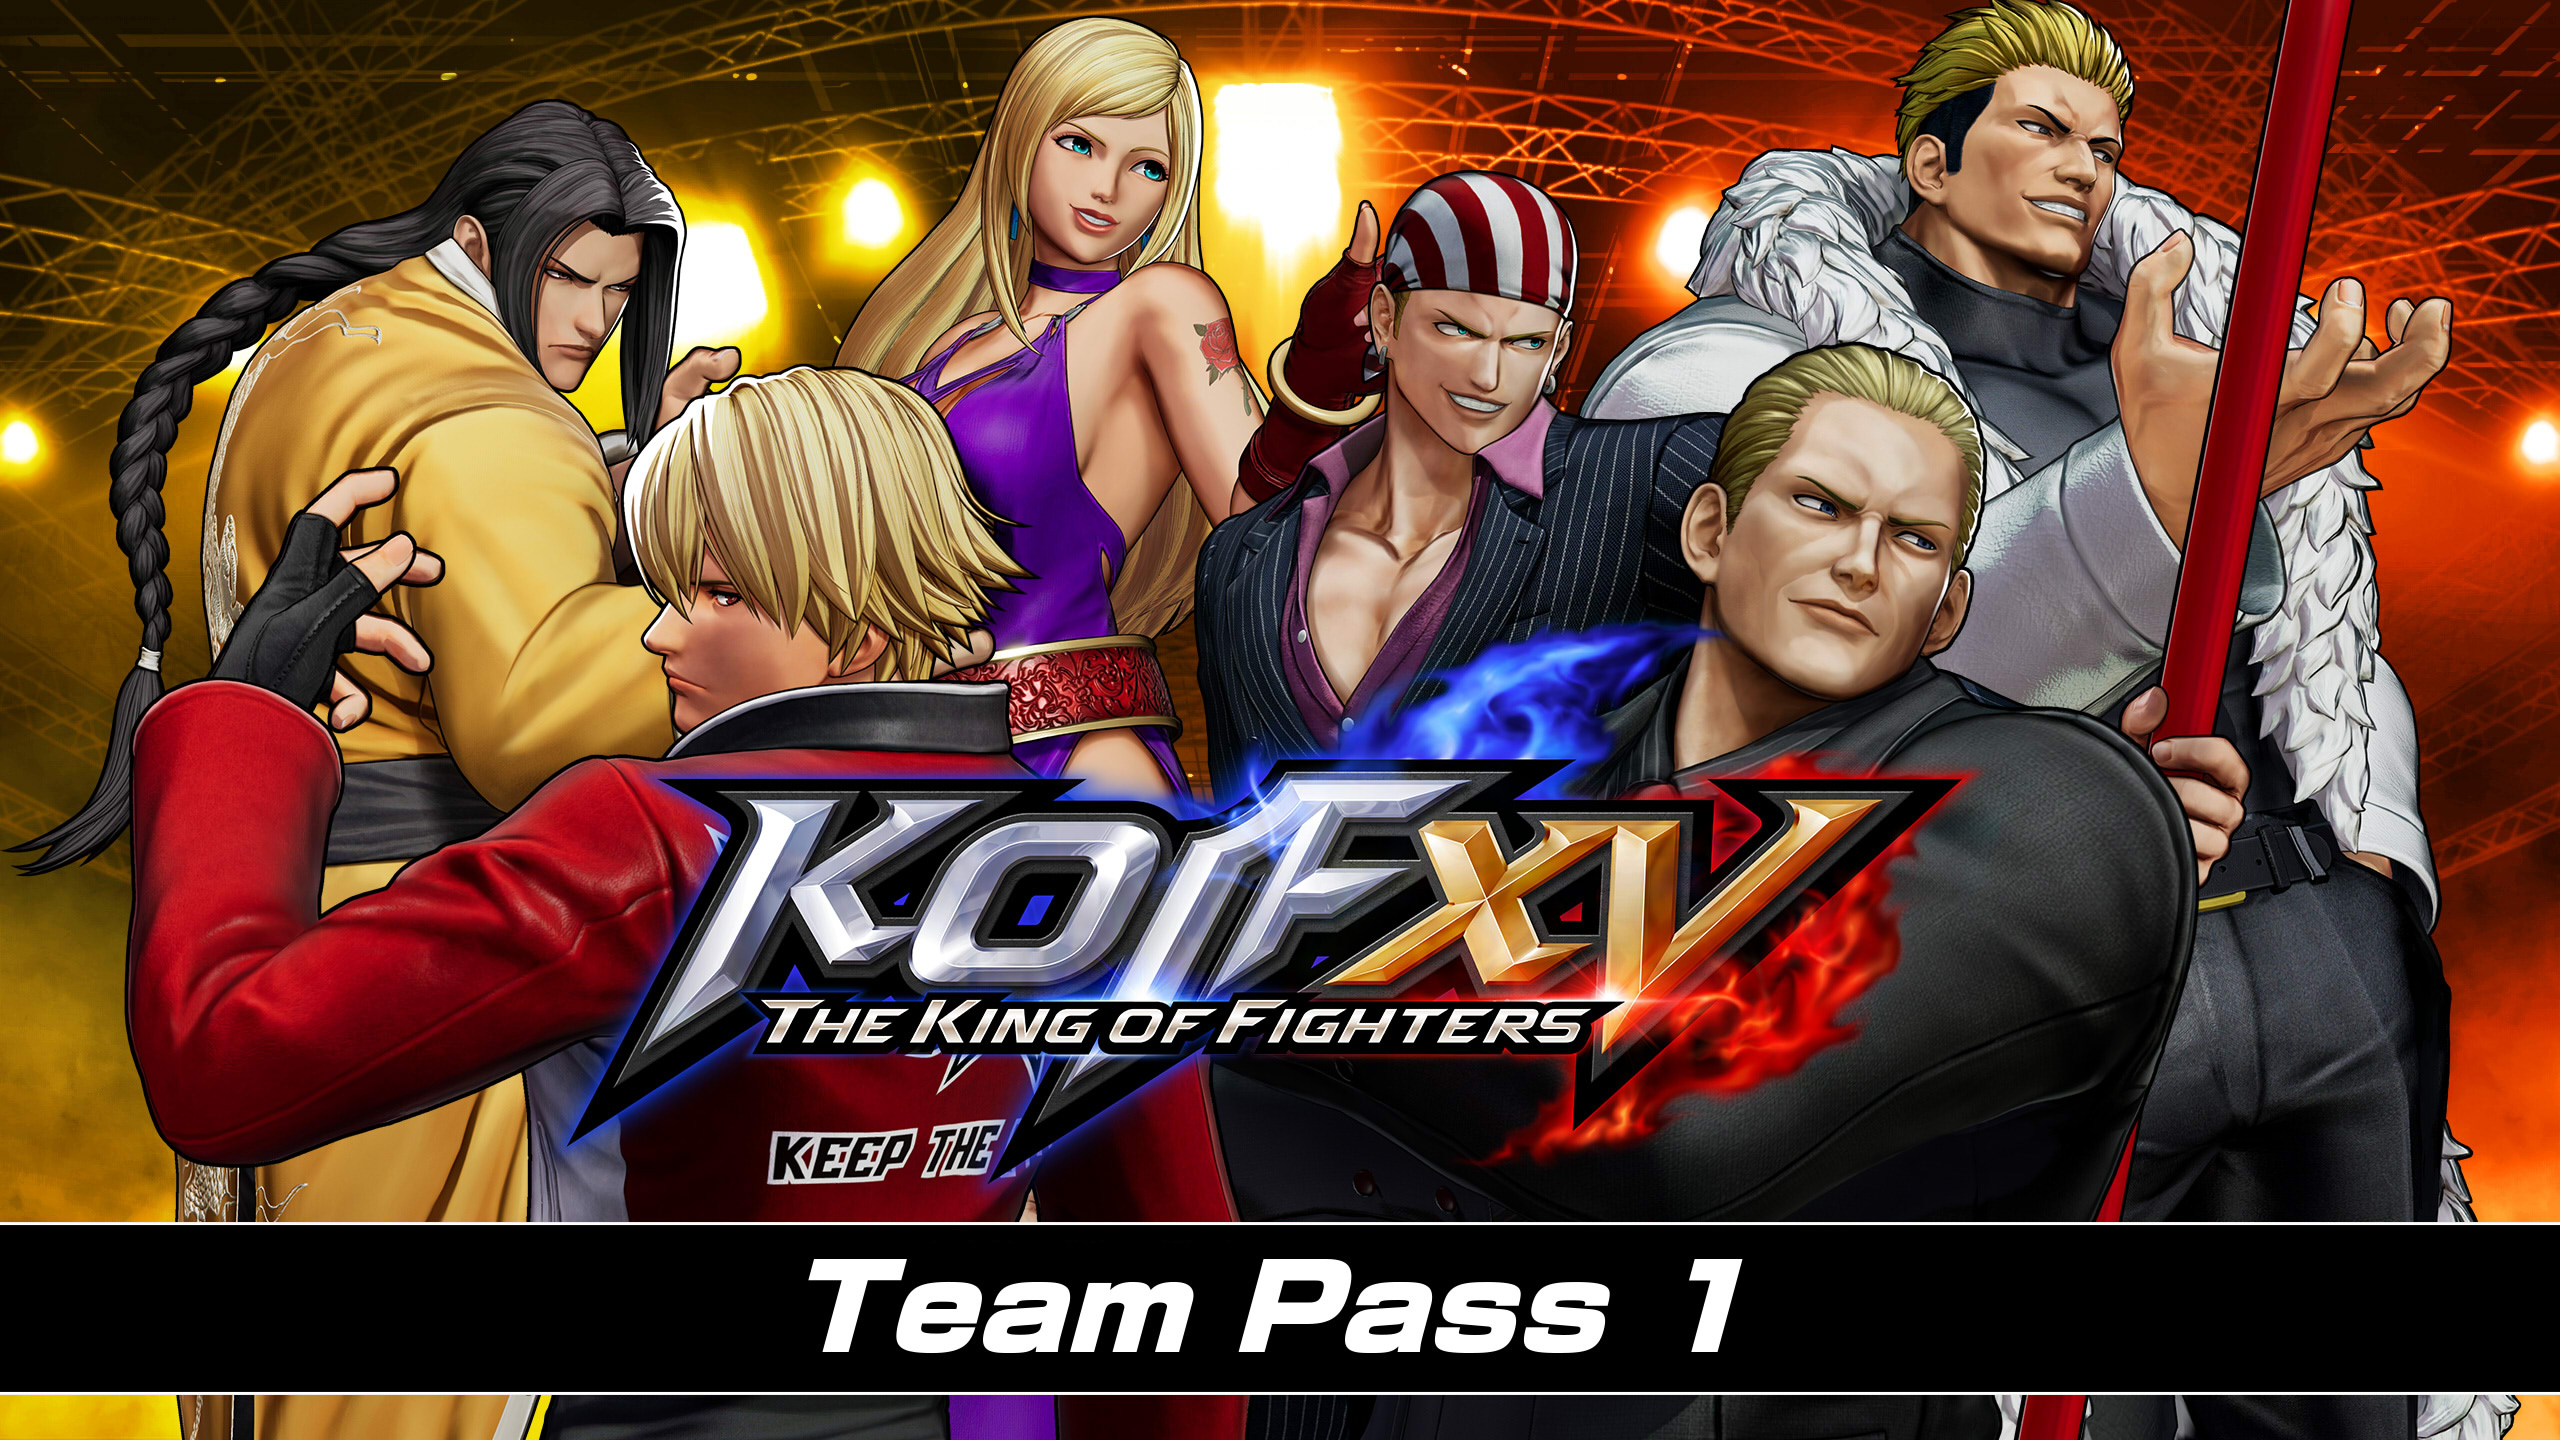 THE KING OF FIGHTERS XV - Team Pass 1 DLC EU PS4 CD Key 25.98$